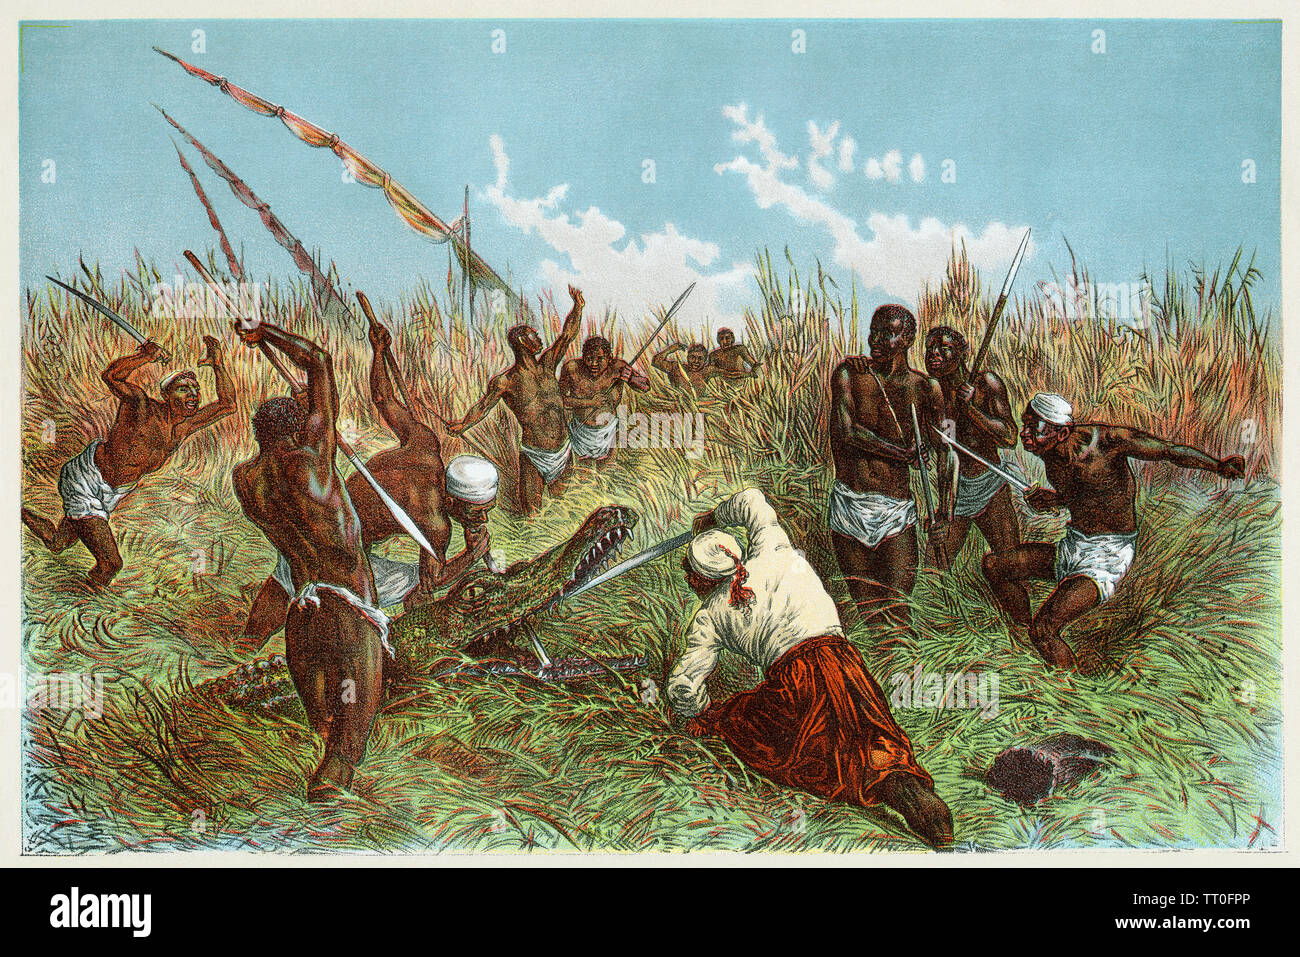 Una expedición dirigida por Henry Stanley luchando contra un cocodrilo en África, 1800. Litografía de color Foto de stock